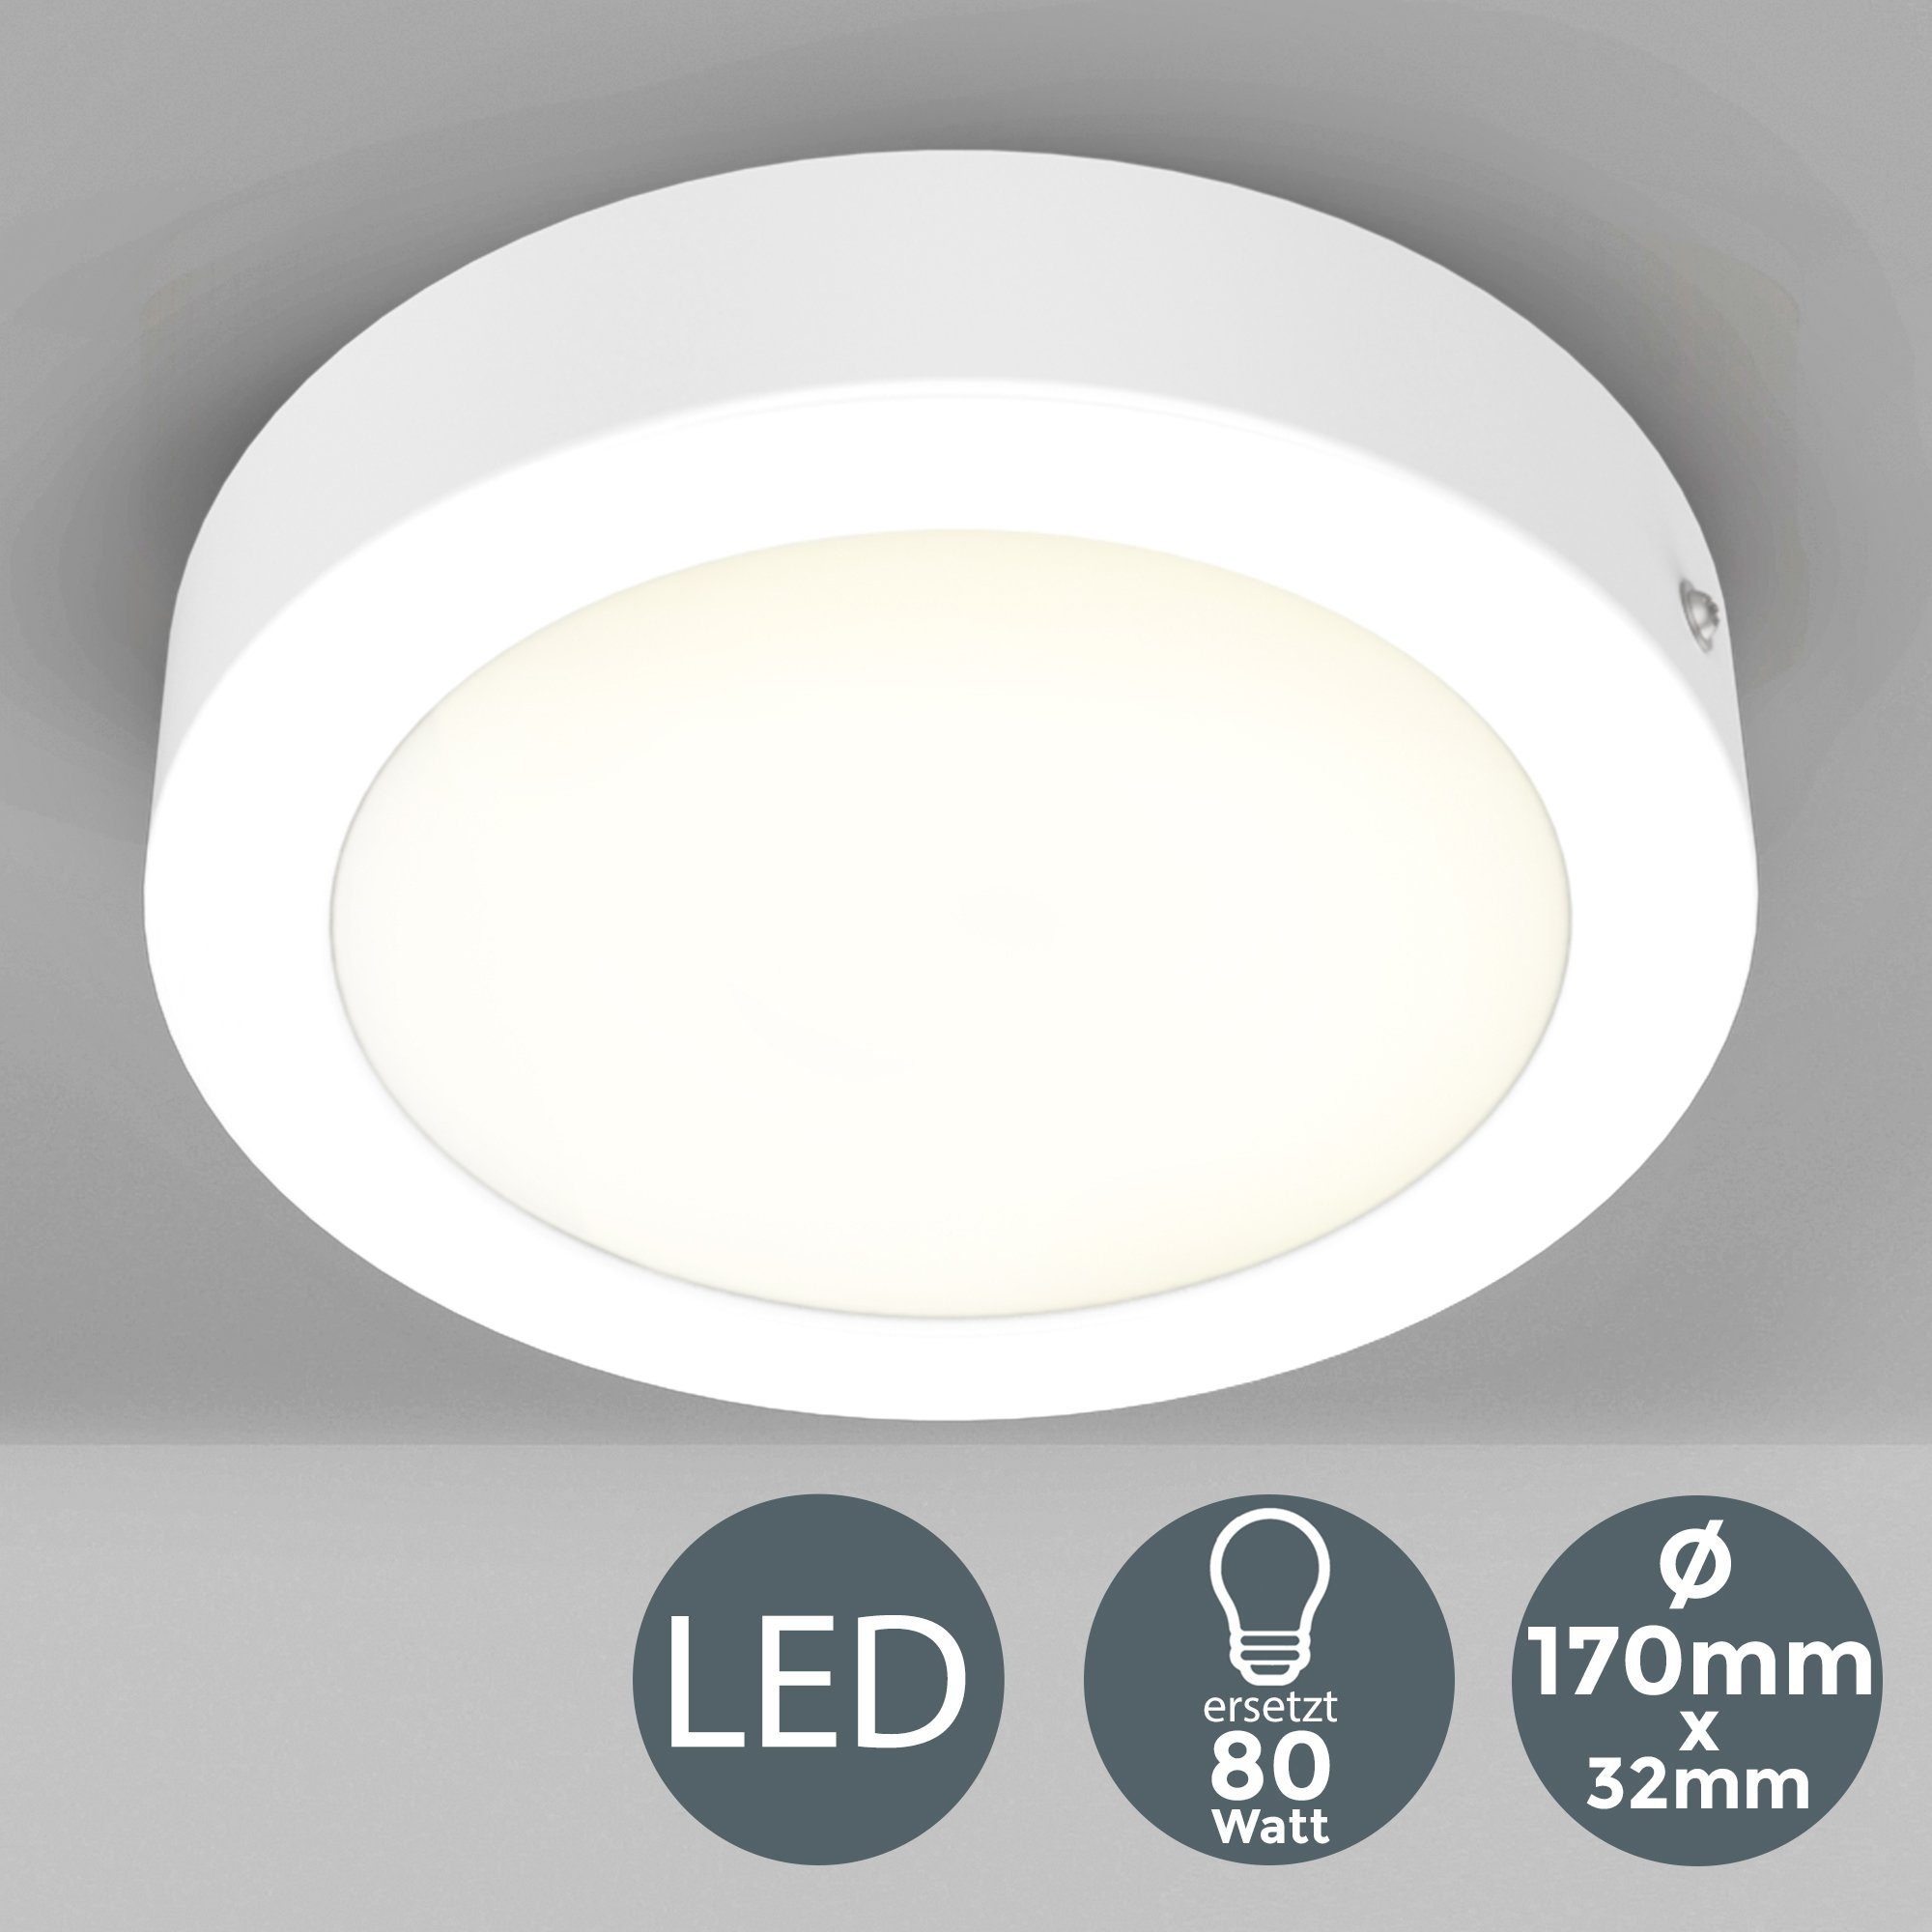 LED Ã˜170mm 900Lm, fest integriert, 12W Garnet, Warmweiß, Panel, Aufbaustrahler Unterbauleuchte, Aufputz-Decken B.K.Licht LED Spots,